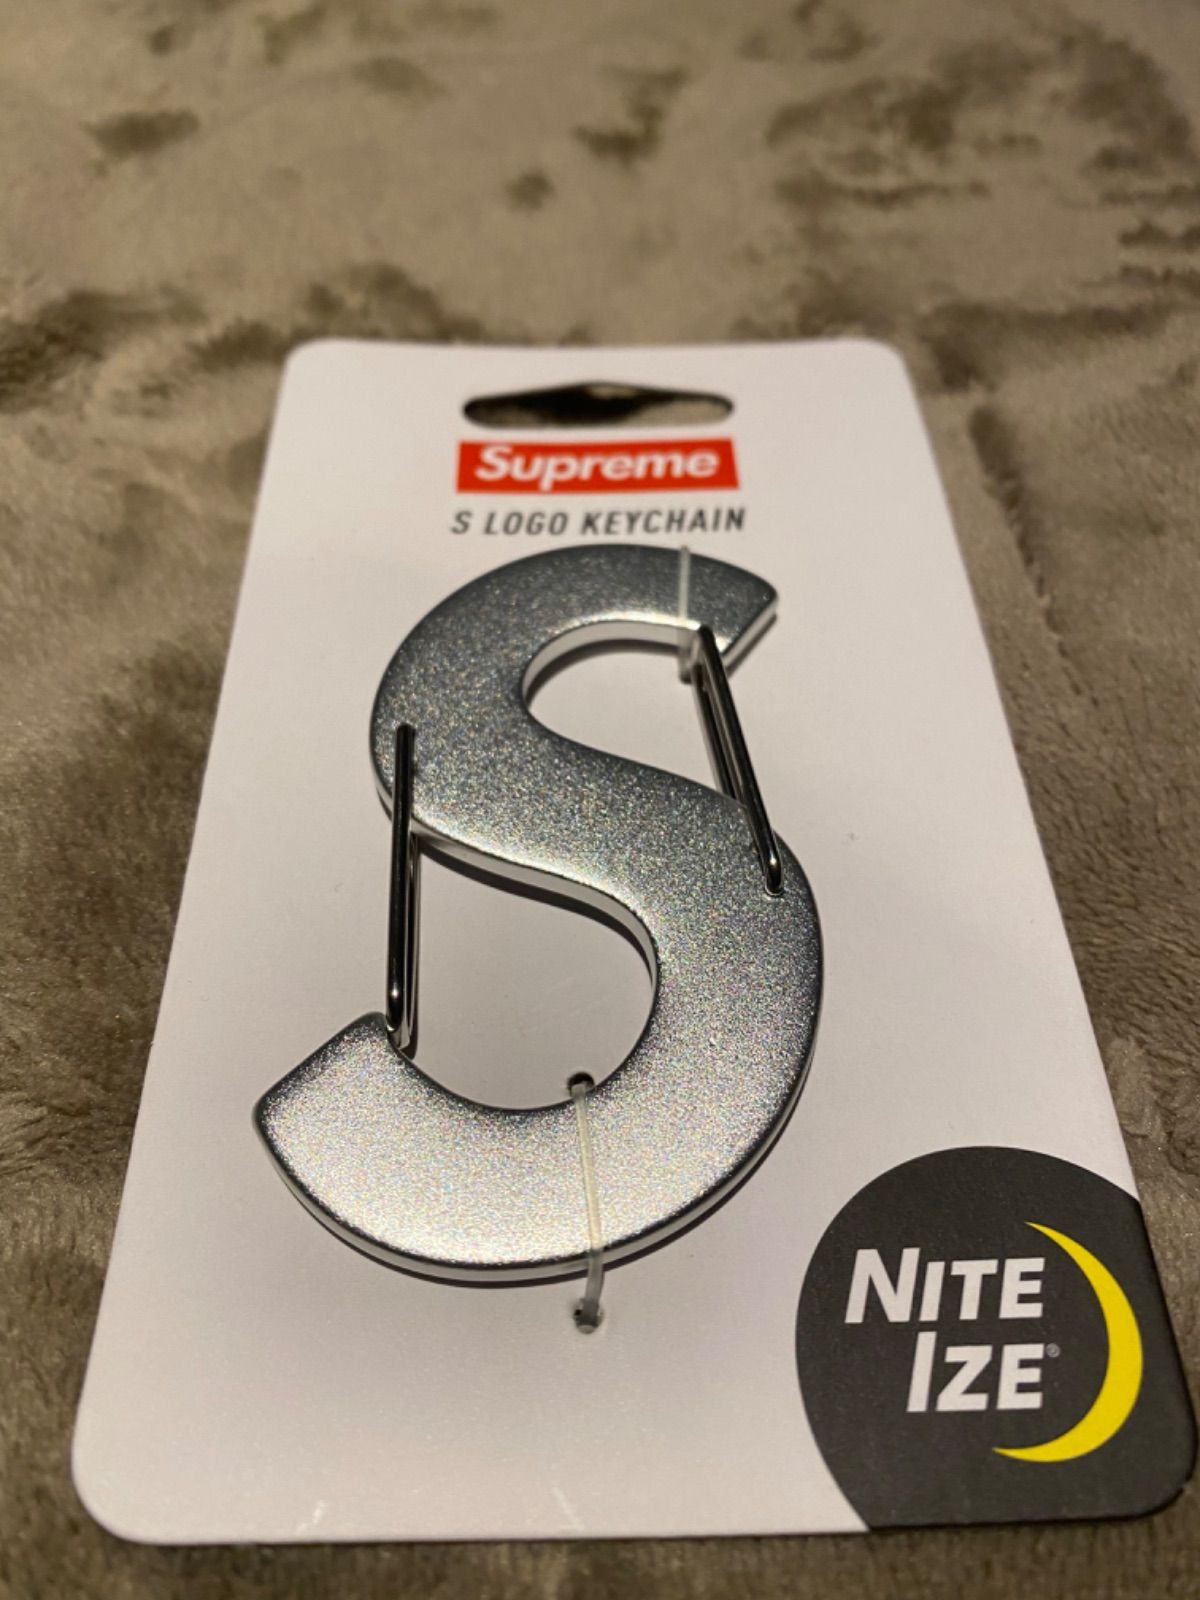 Supreme S logo Keychain Nite Izeおいくら希望でしょうか